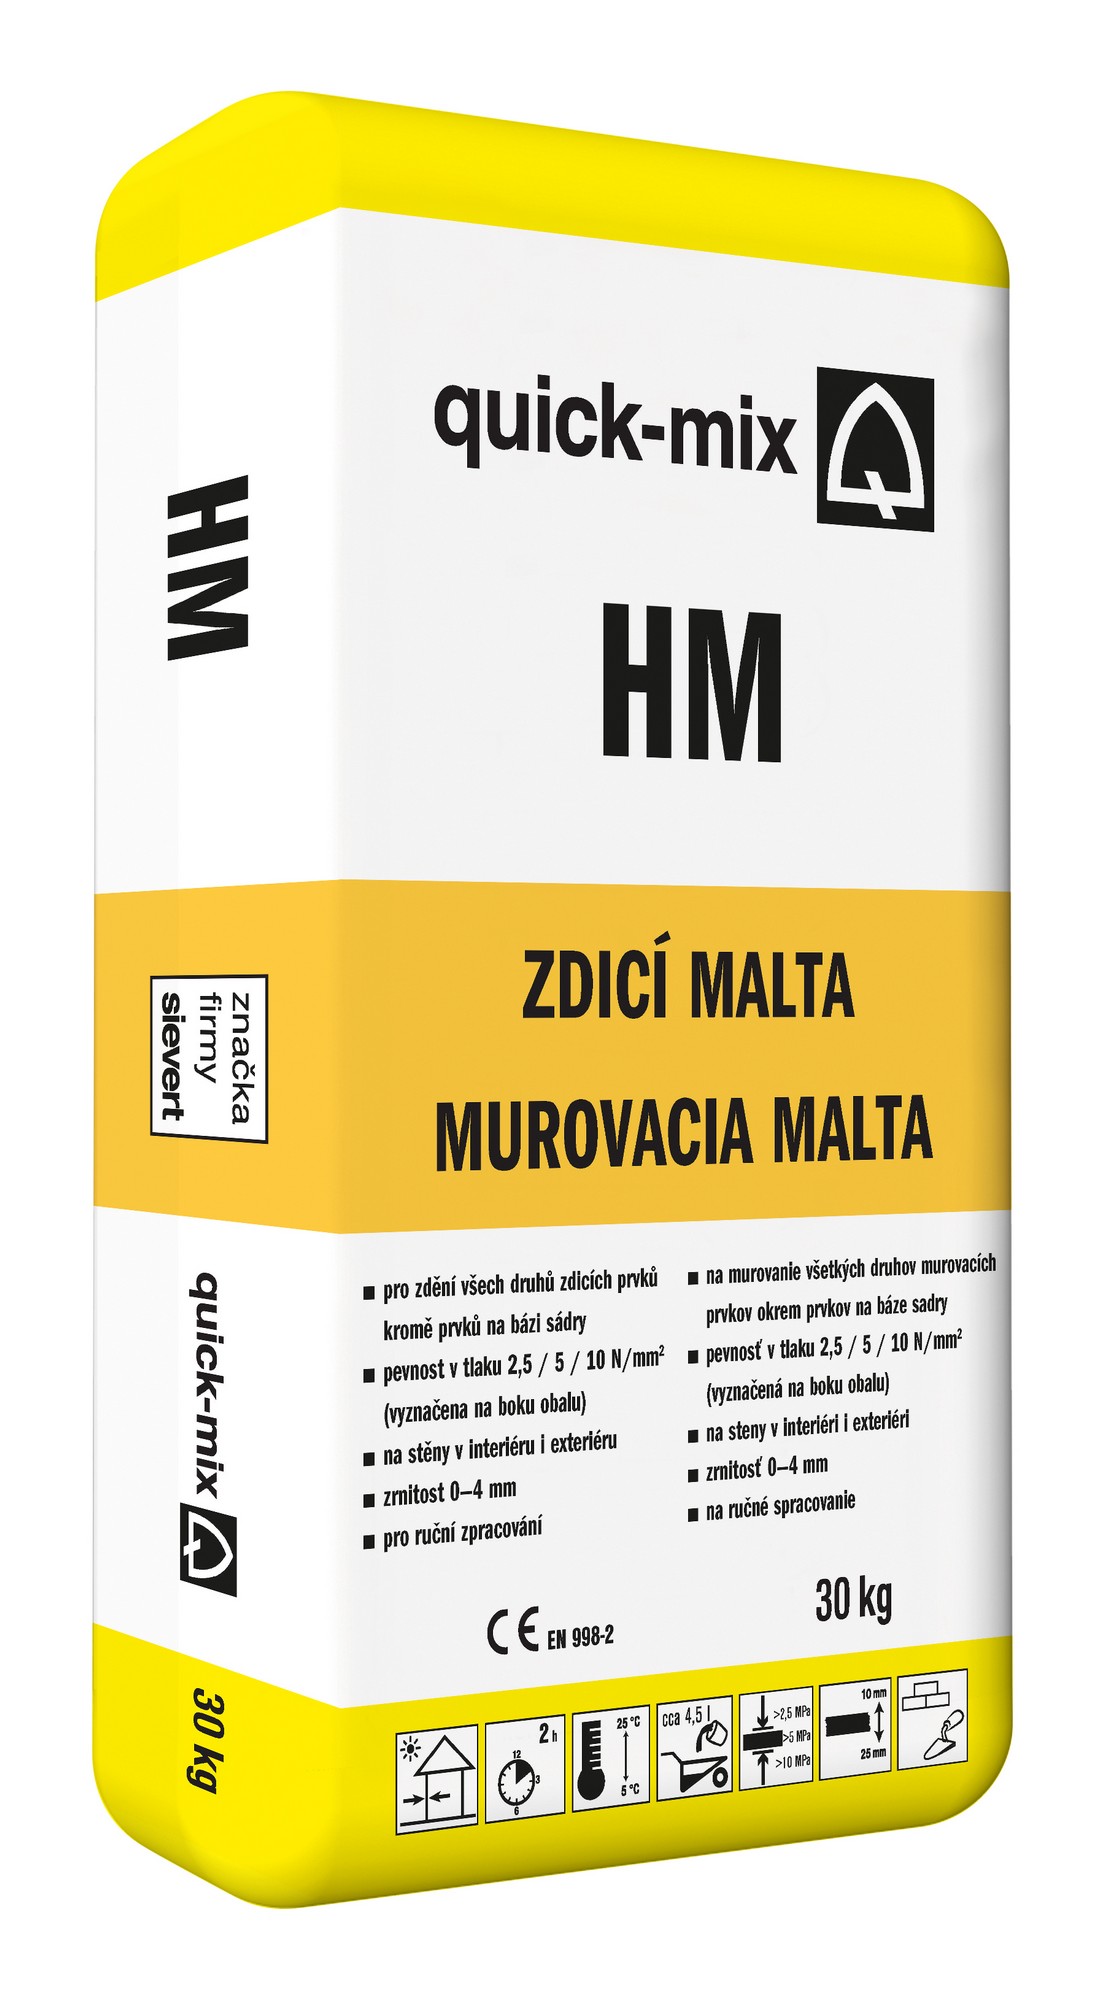 Malta zdicí Sakret/Quick-mix HM 5 30 kg